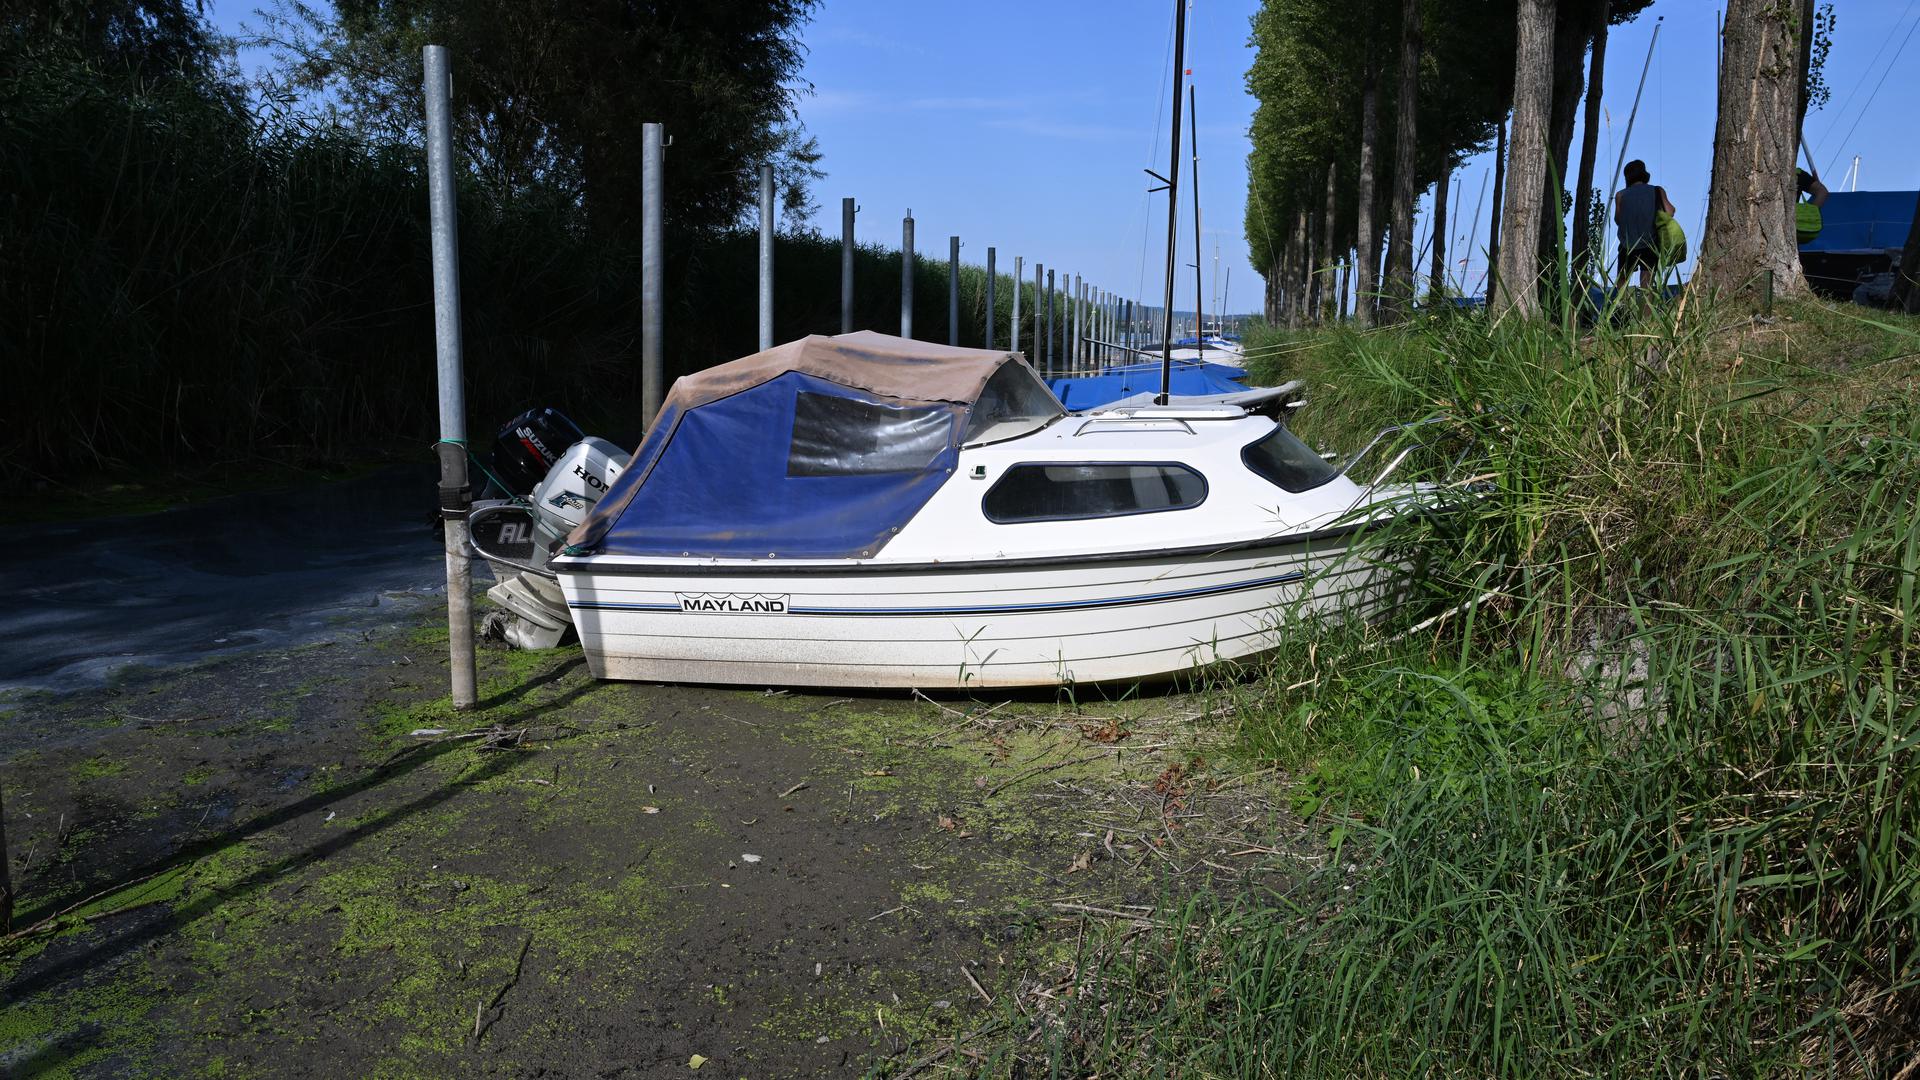 28.07.2022, Baden-Württemberg, Moos Am Bodensee: Mehrere Boote liegen im Hafen von Moos auf dem Trockenen, weil der Bodensee Niedrigwasser hat. Foto: Felix Kästle/dpa +++ dpa-Bildfunk +++